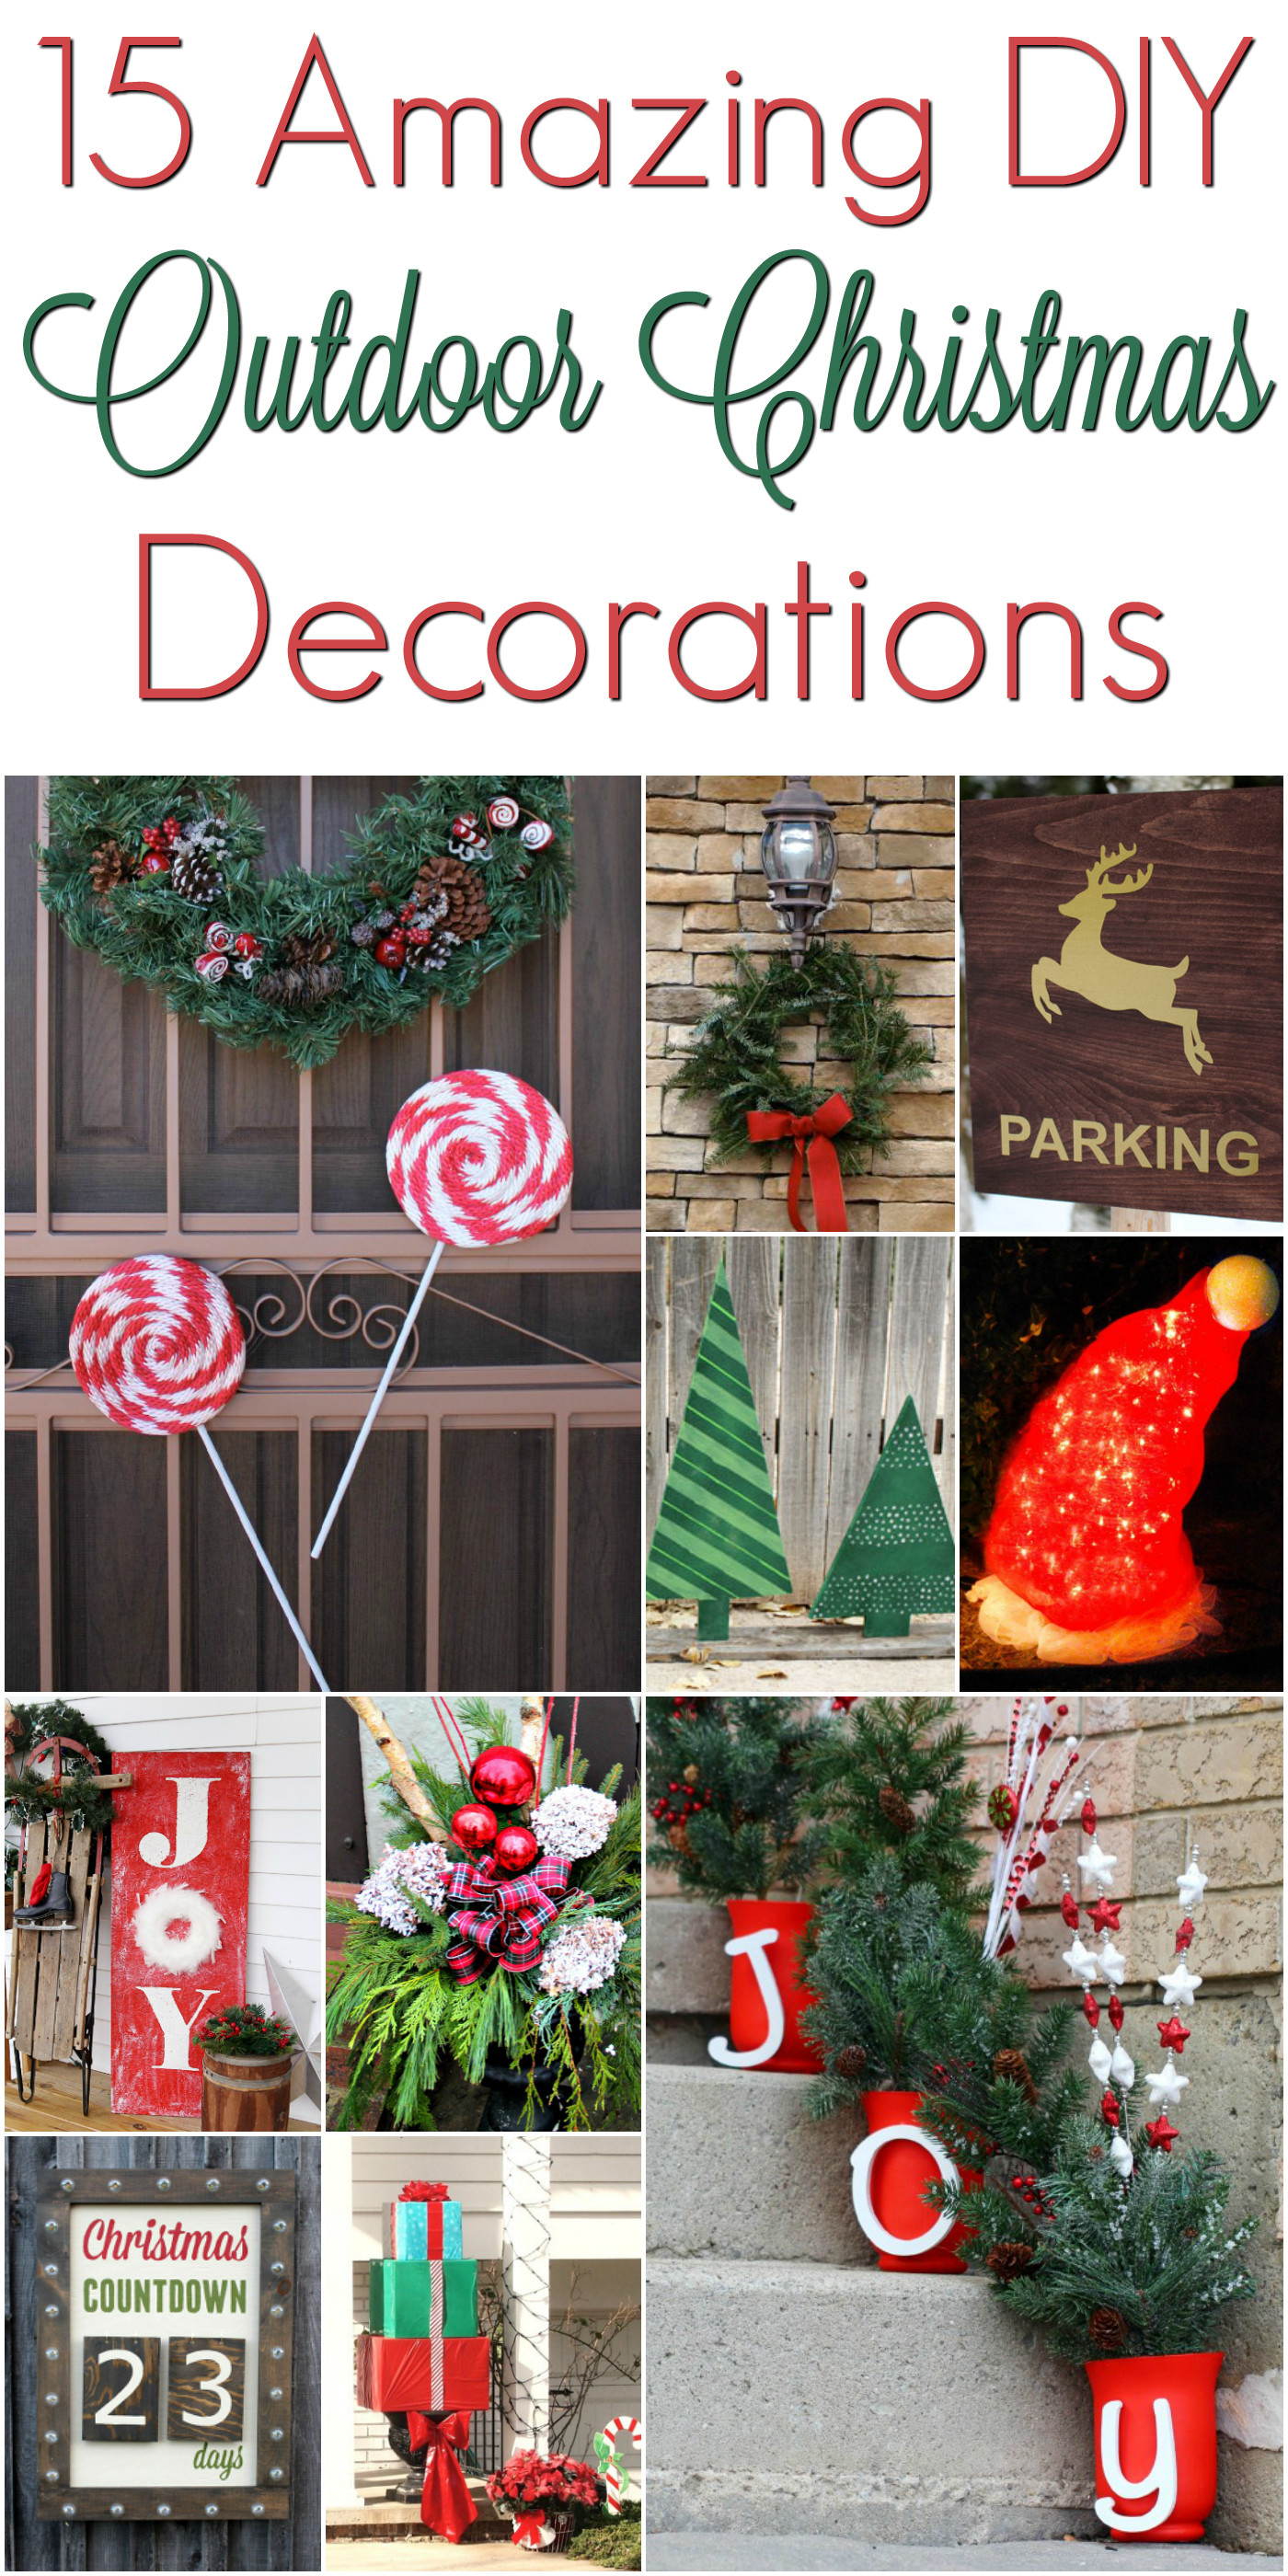 DIY Outdoor Lawn Christmas Decorations
 DIY Christmas Outdoor Decorations ChristmasDecorations